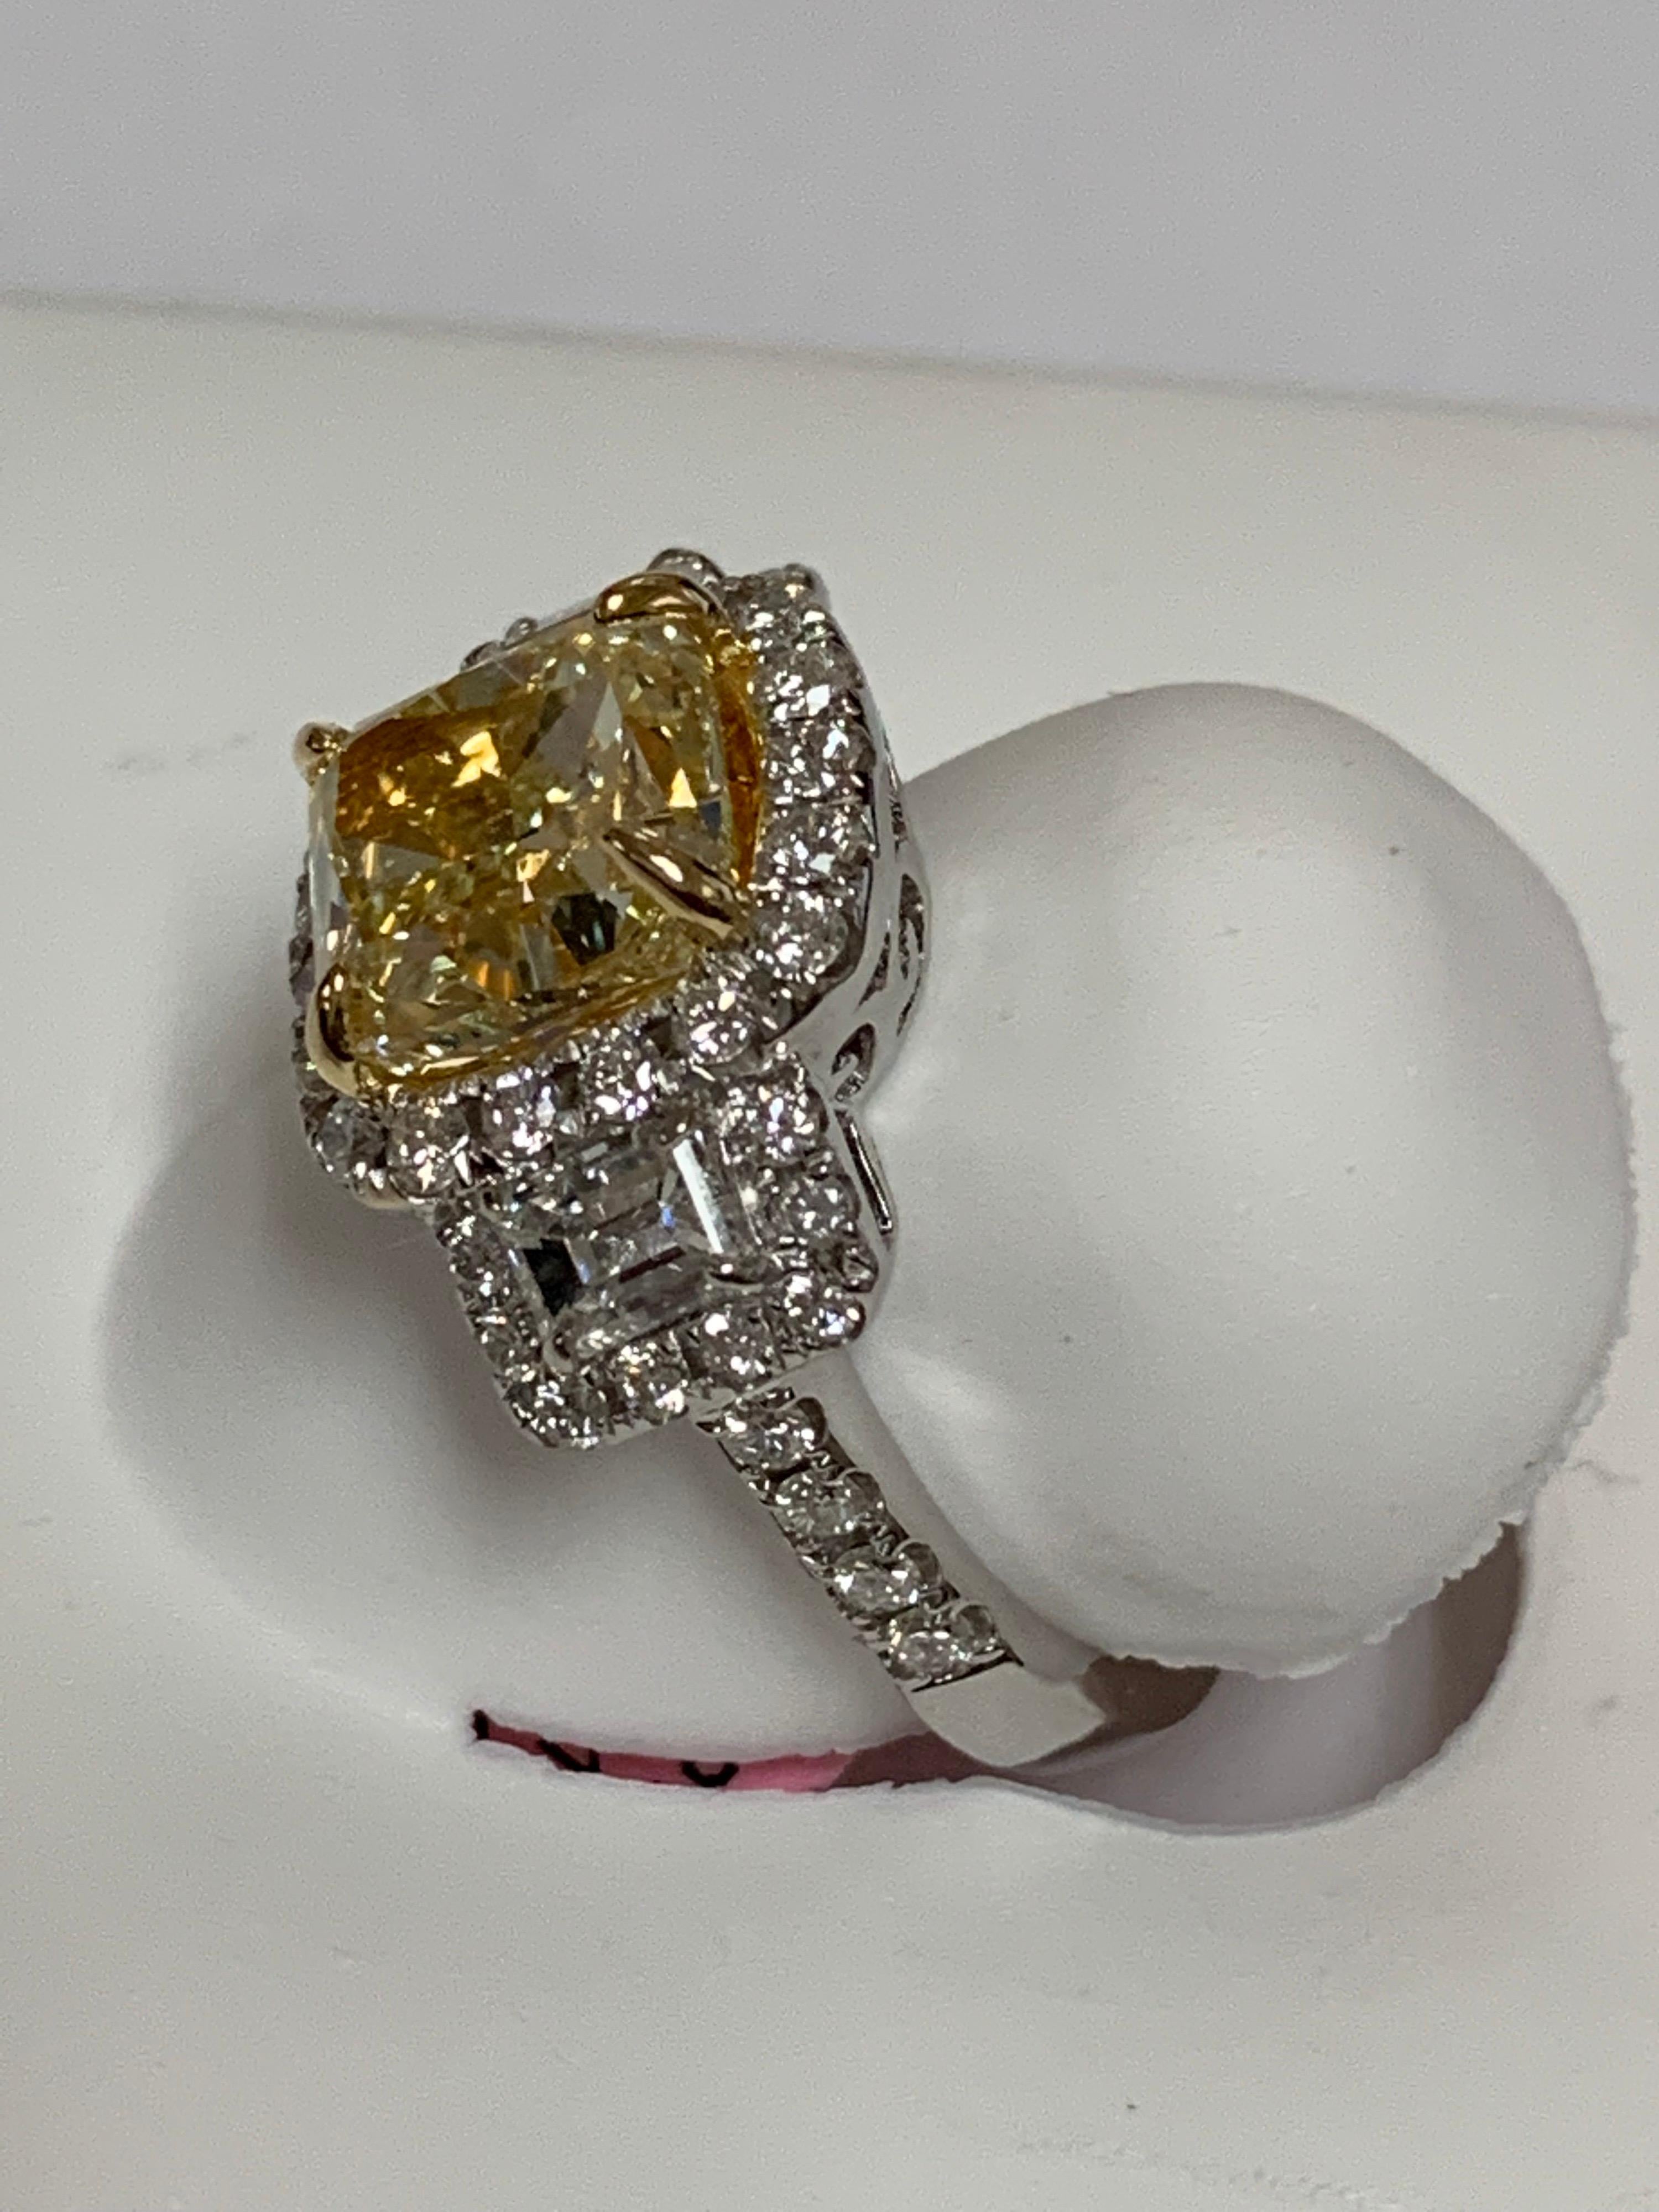 3.5 carat yellow diamond price